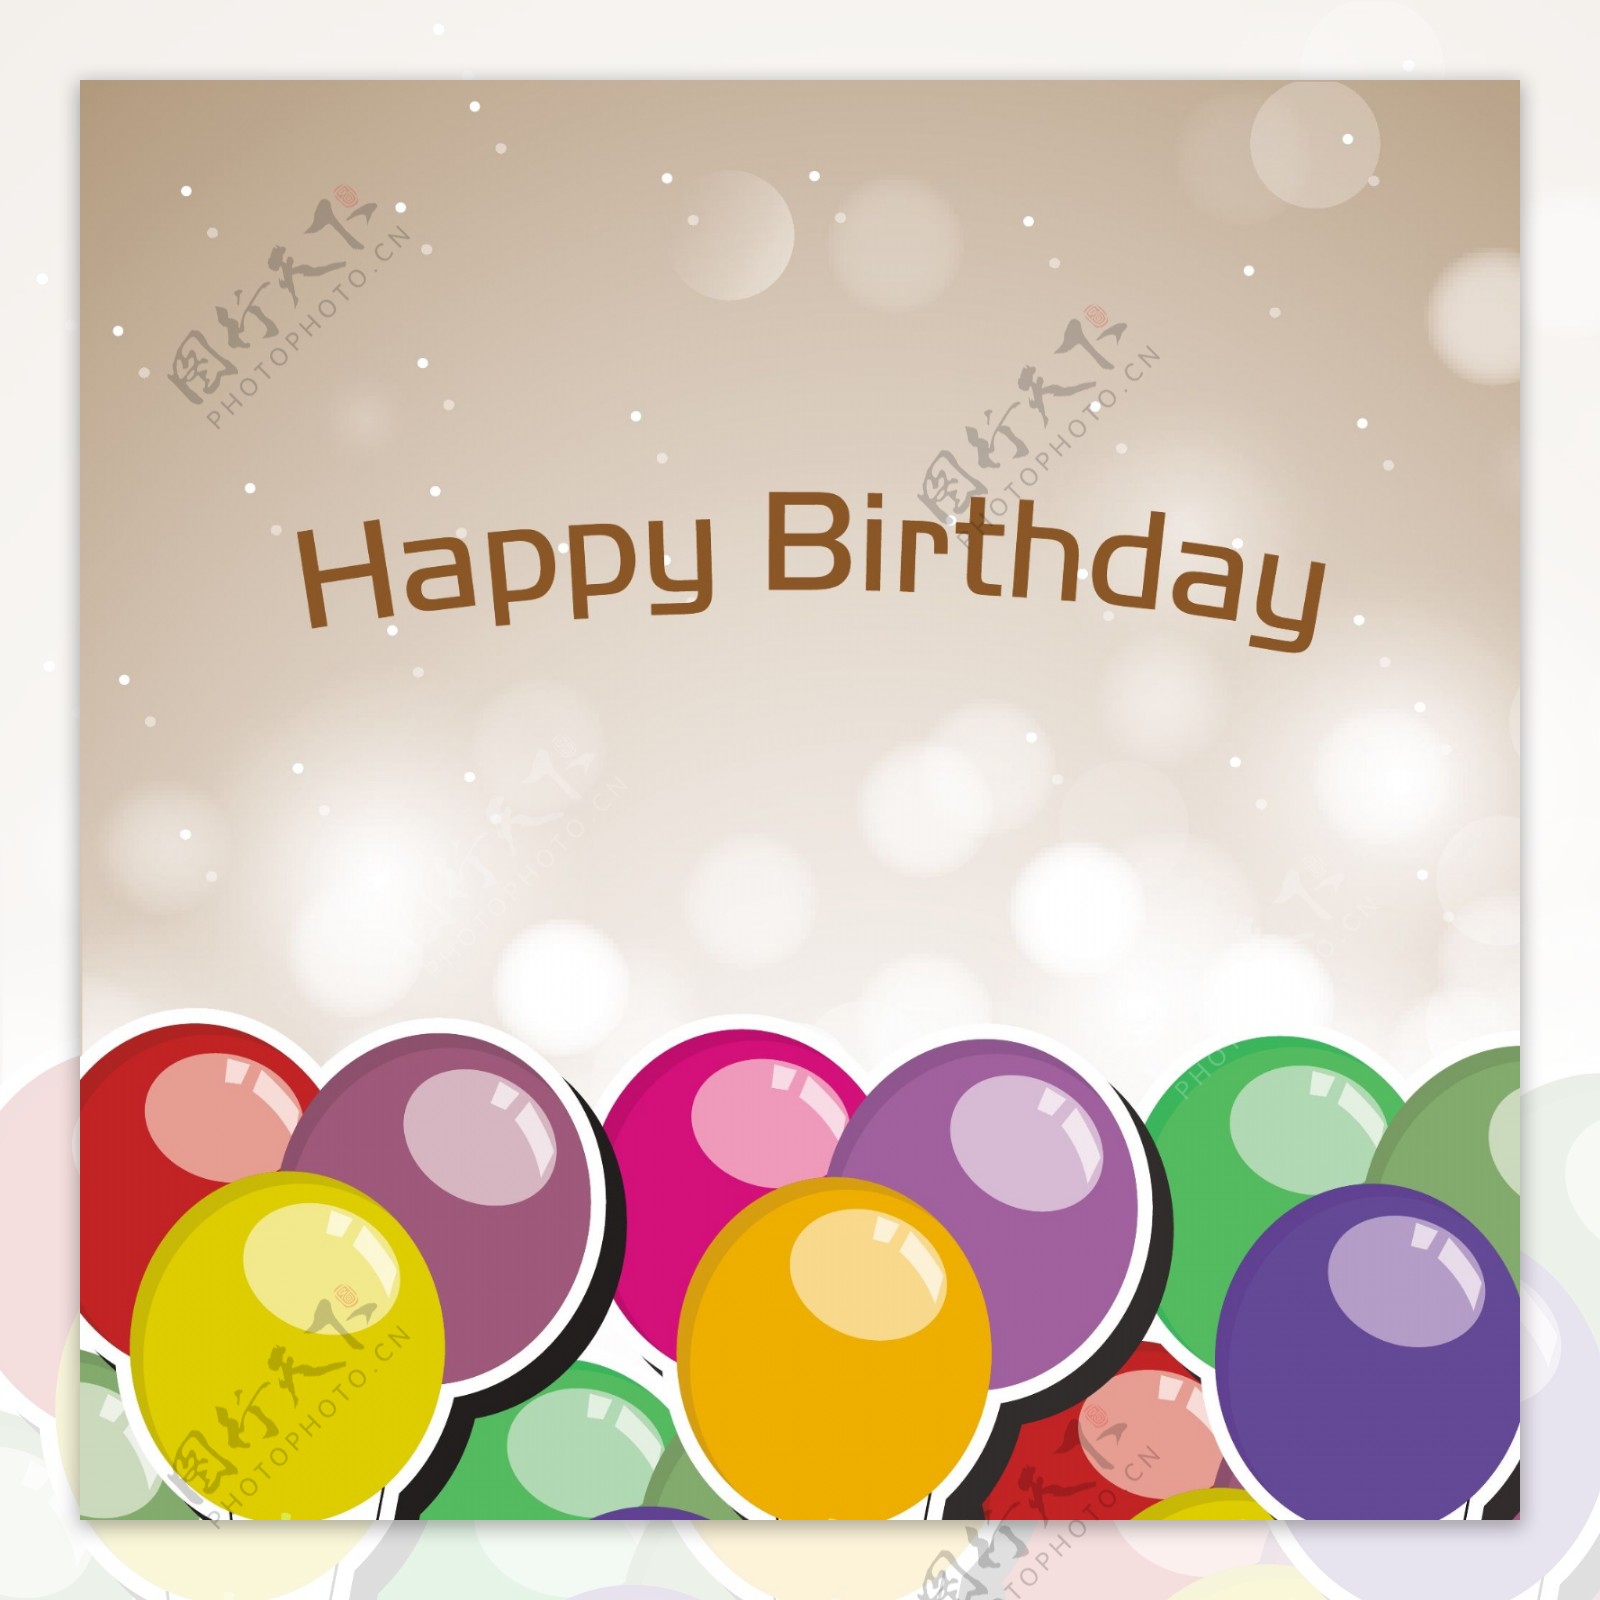 五颜六色的气球和文本生日快乐生日庆祝聚会闪亮的背景